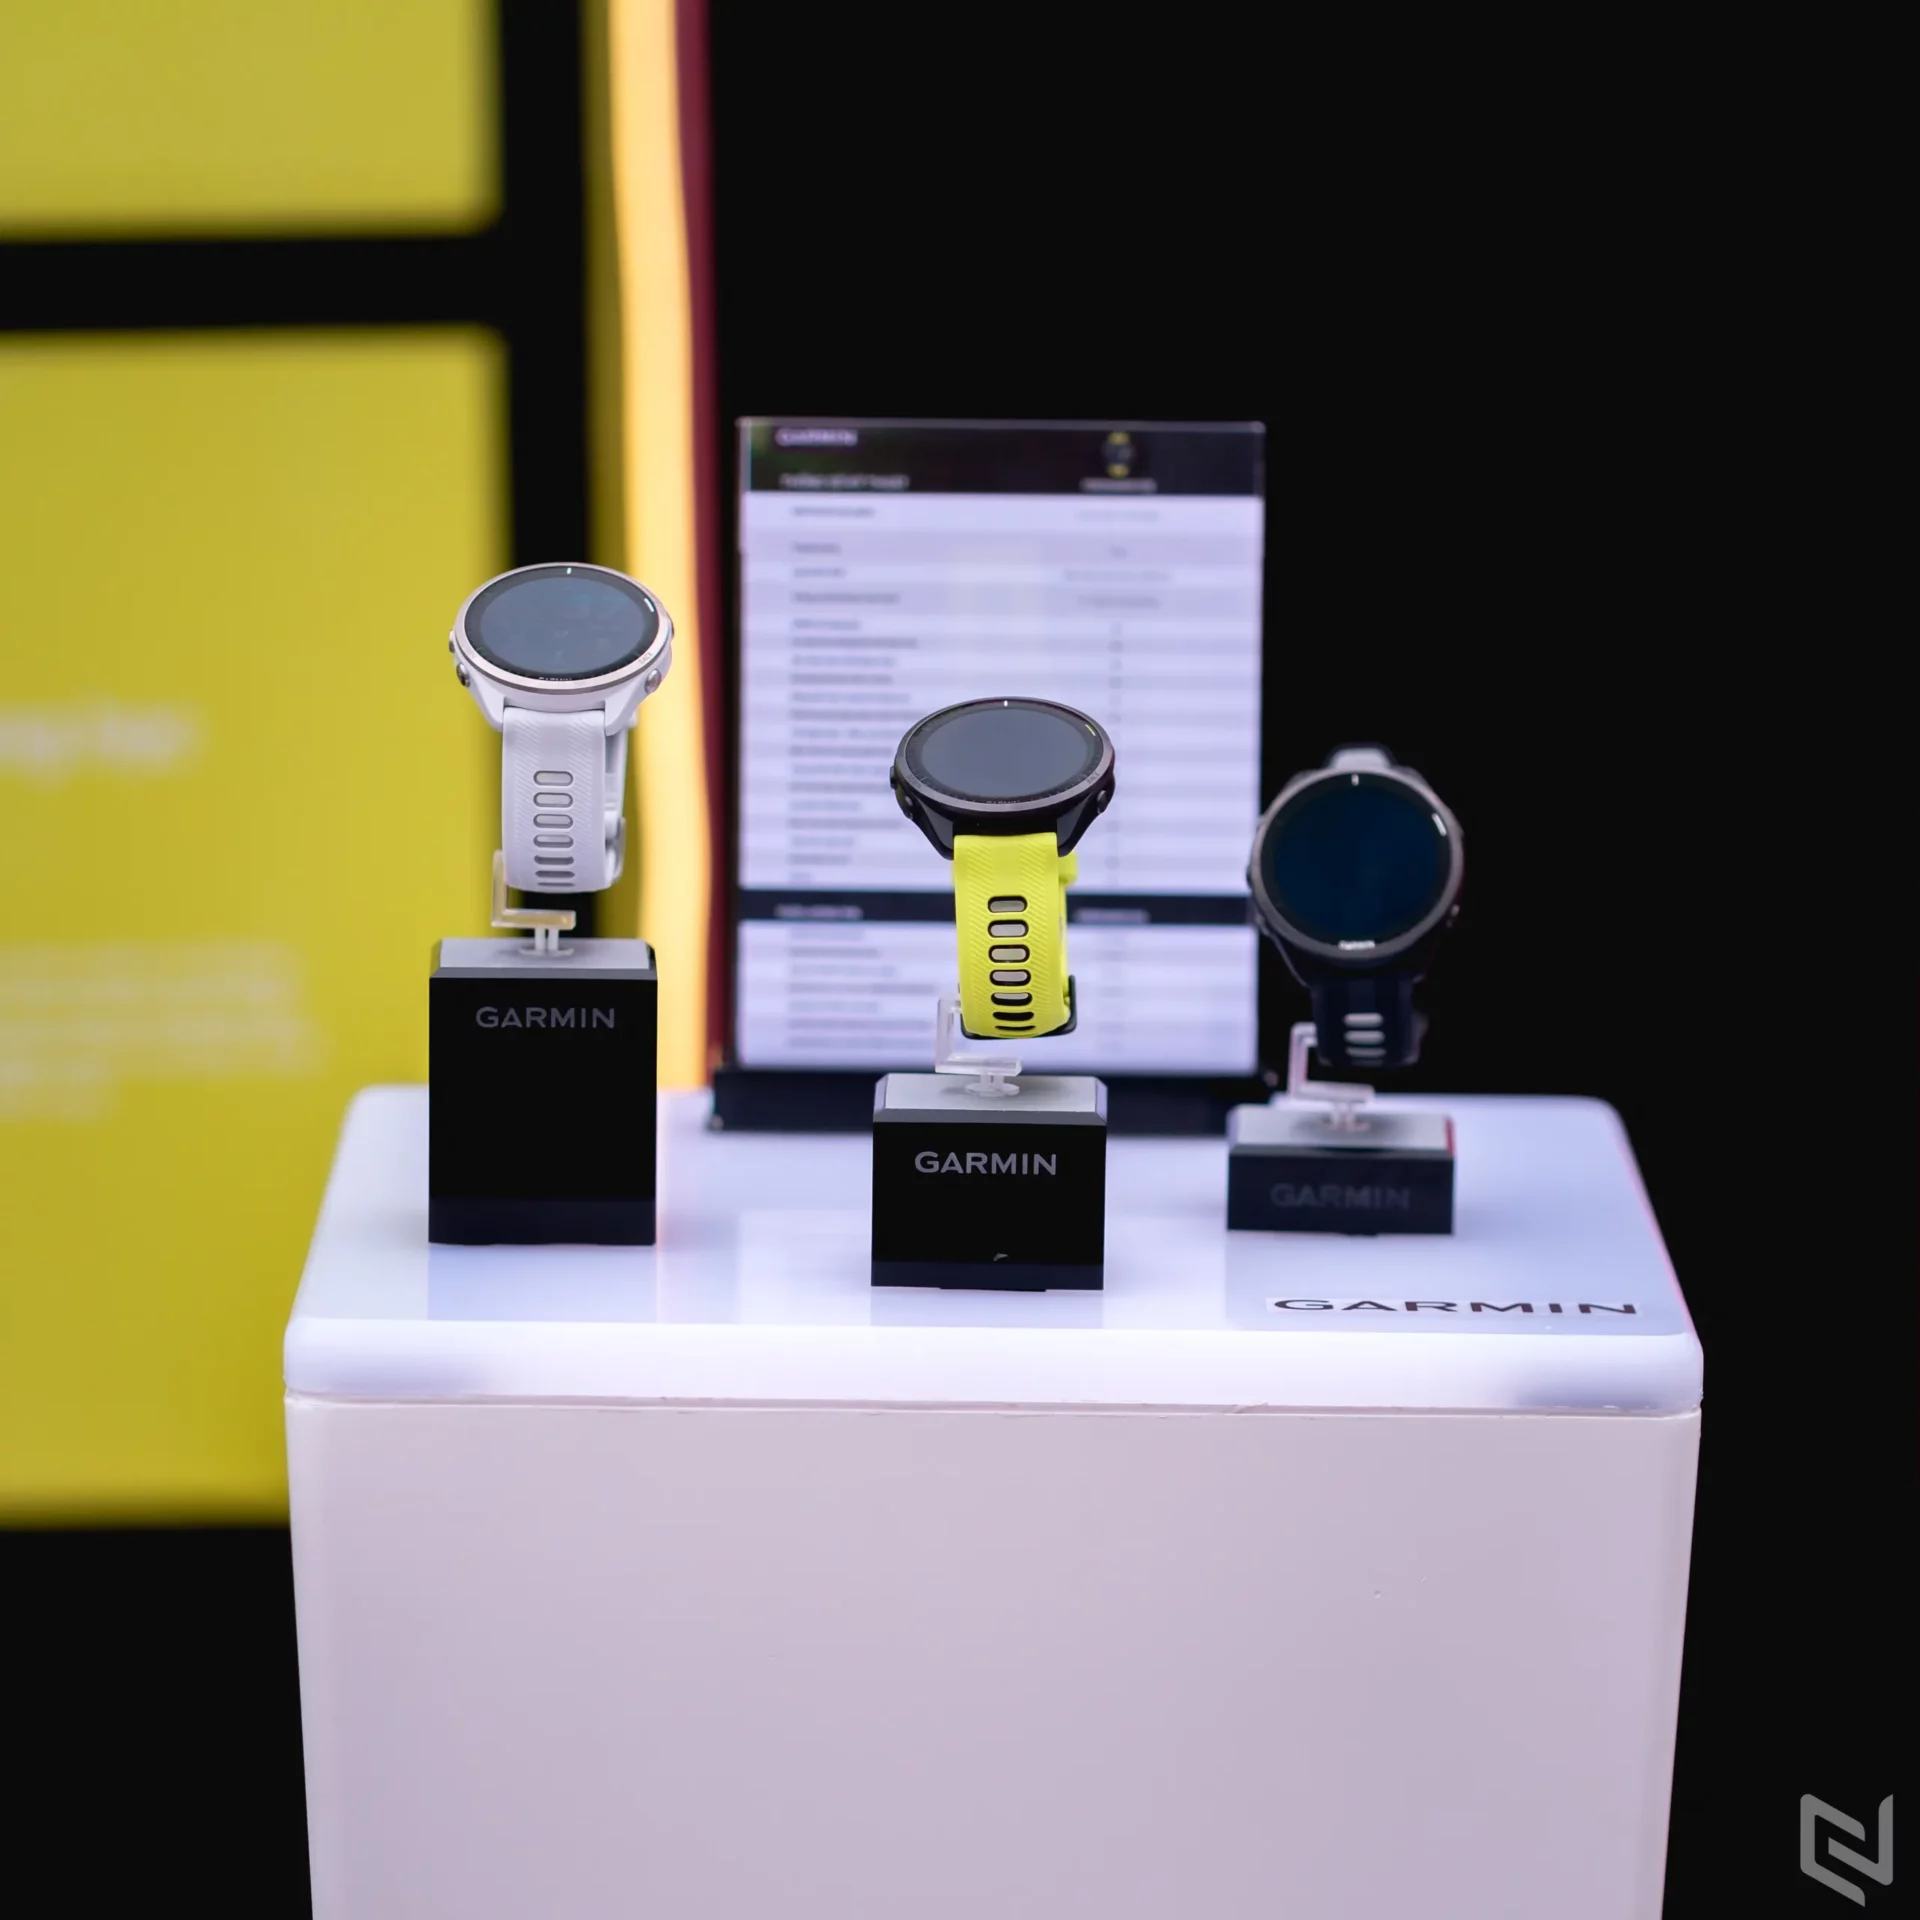 Garmin ra mắt đồng hồ chạy bộ GPS màn hình AMOLED đầu tiên thế giới - Forerunner 265 và Forerunner 965